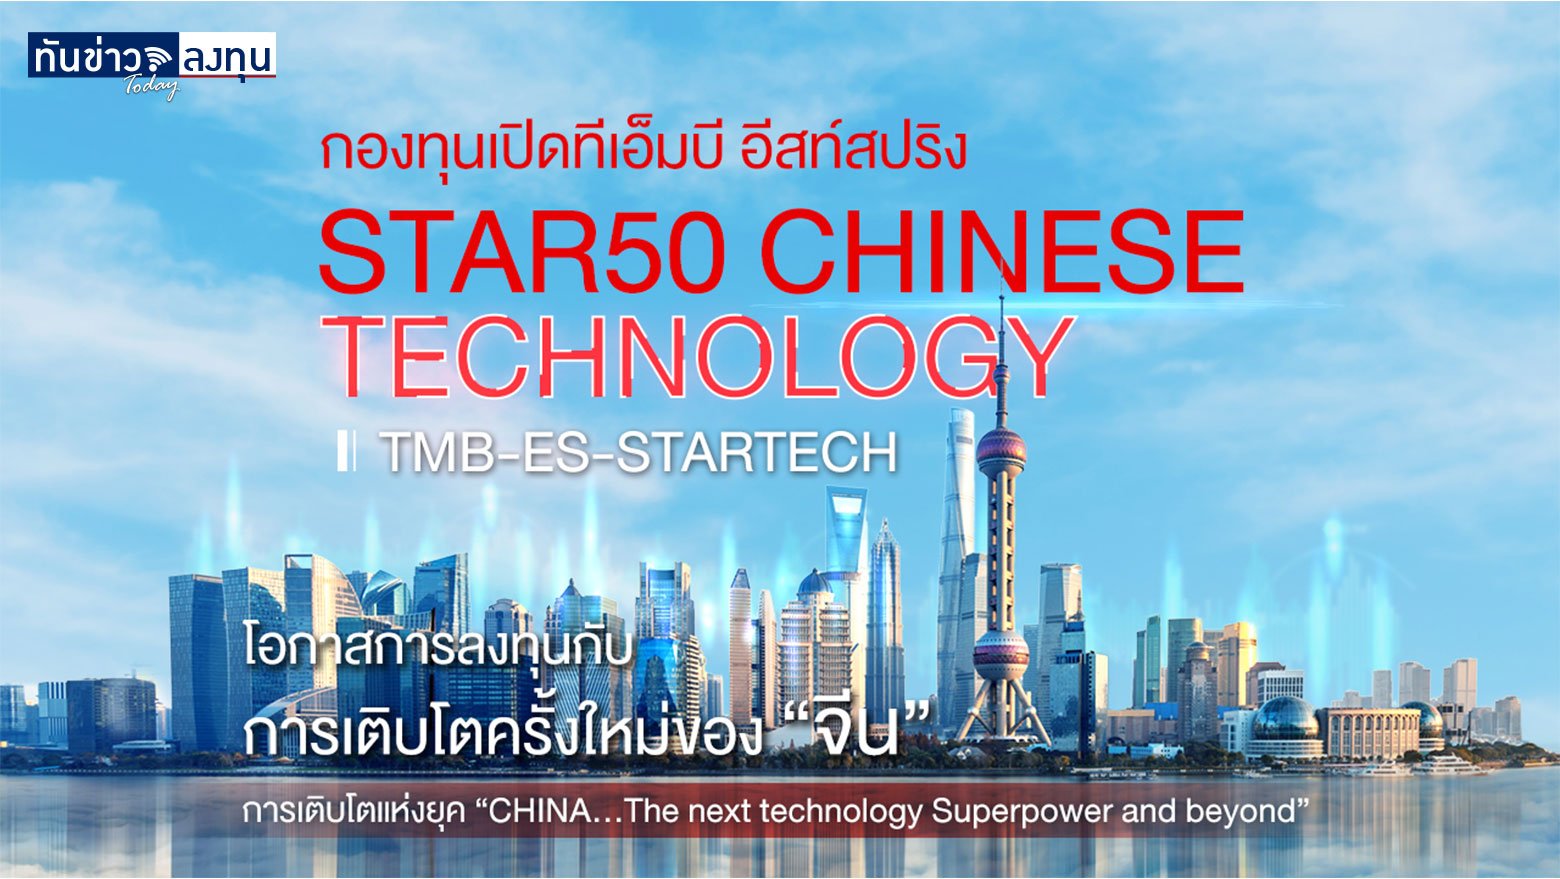 คว้าโอกาสลงทุน หุ้นเทคโนโลยีแดนมังกร กับ TMB EASTSPRING Star50 Chinese Technology Fund